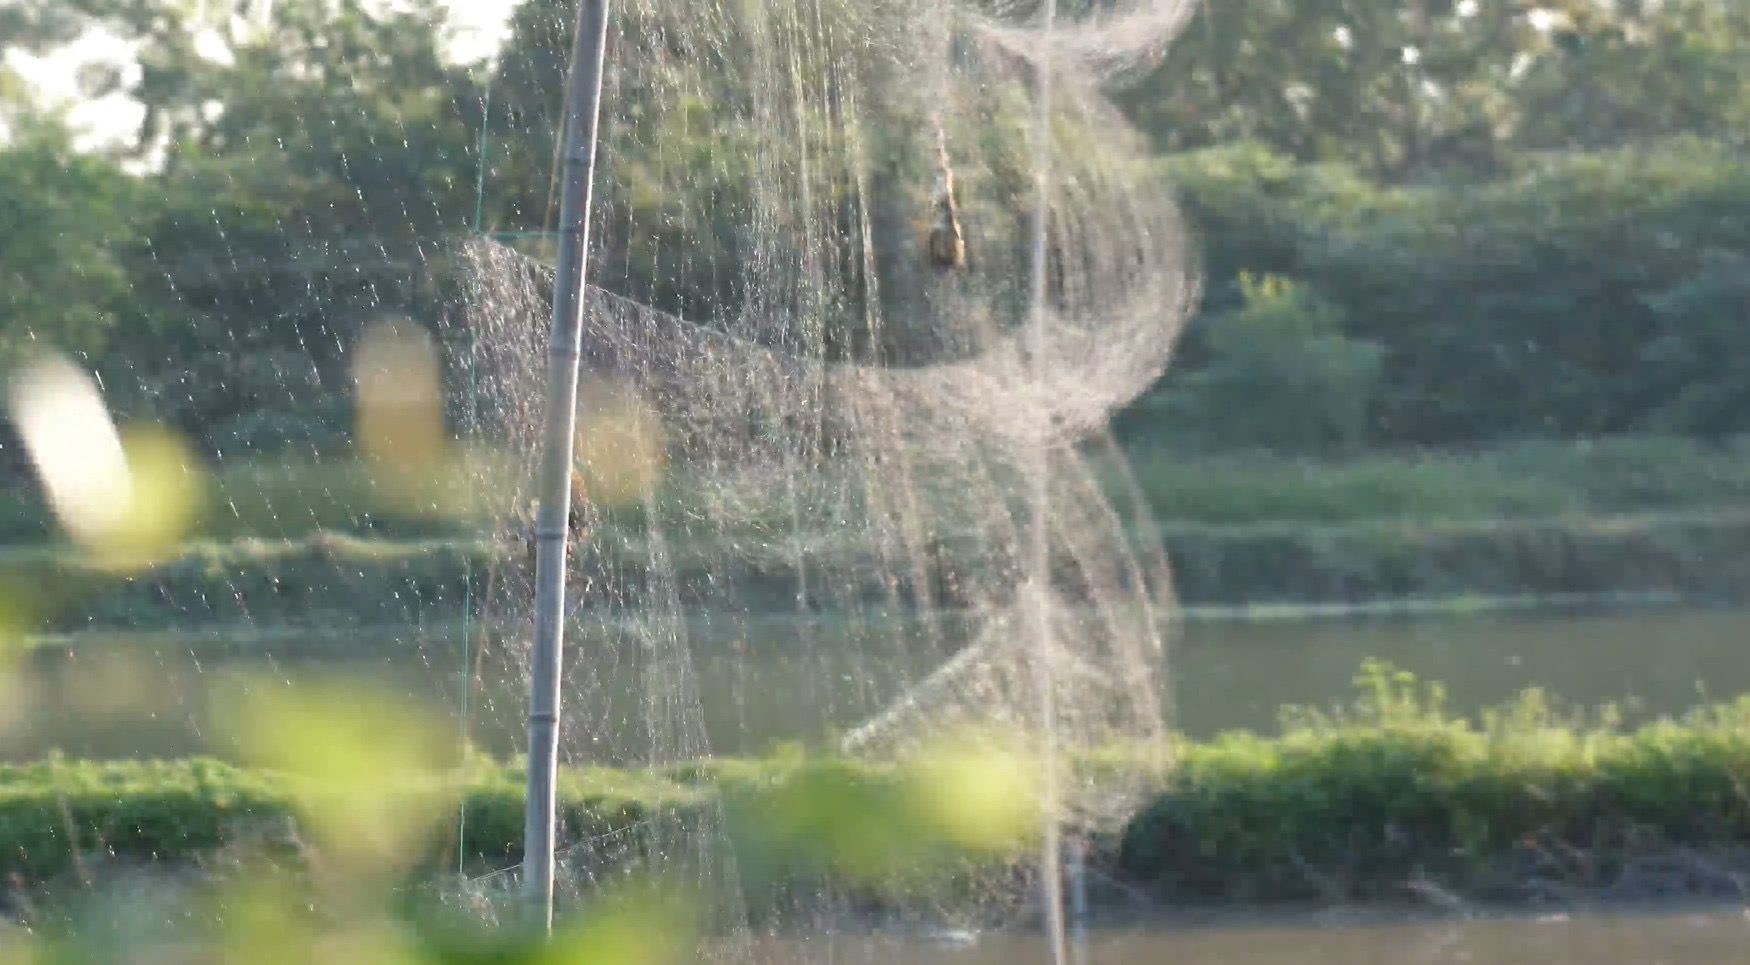 Chim dính bẫy lưới mờ. Hình ảnh ghi nhận tại xã Bình Minh, Thanh Oai, Hà Nội. Ảnh: Xuân Tâm